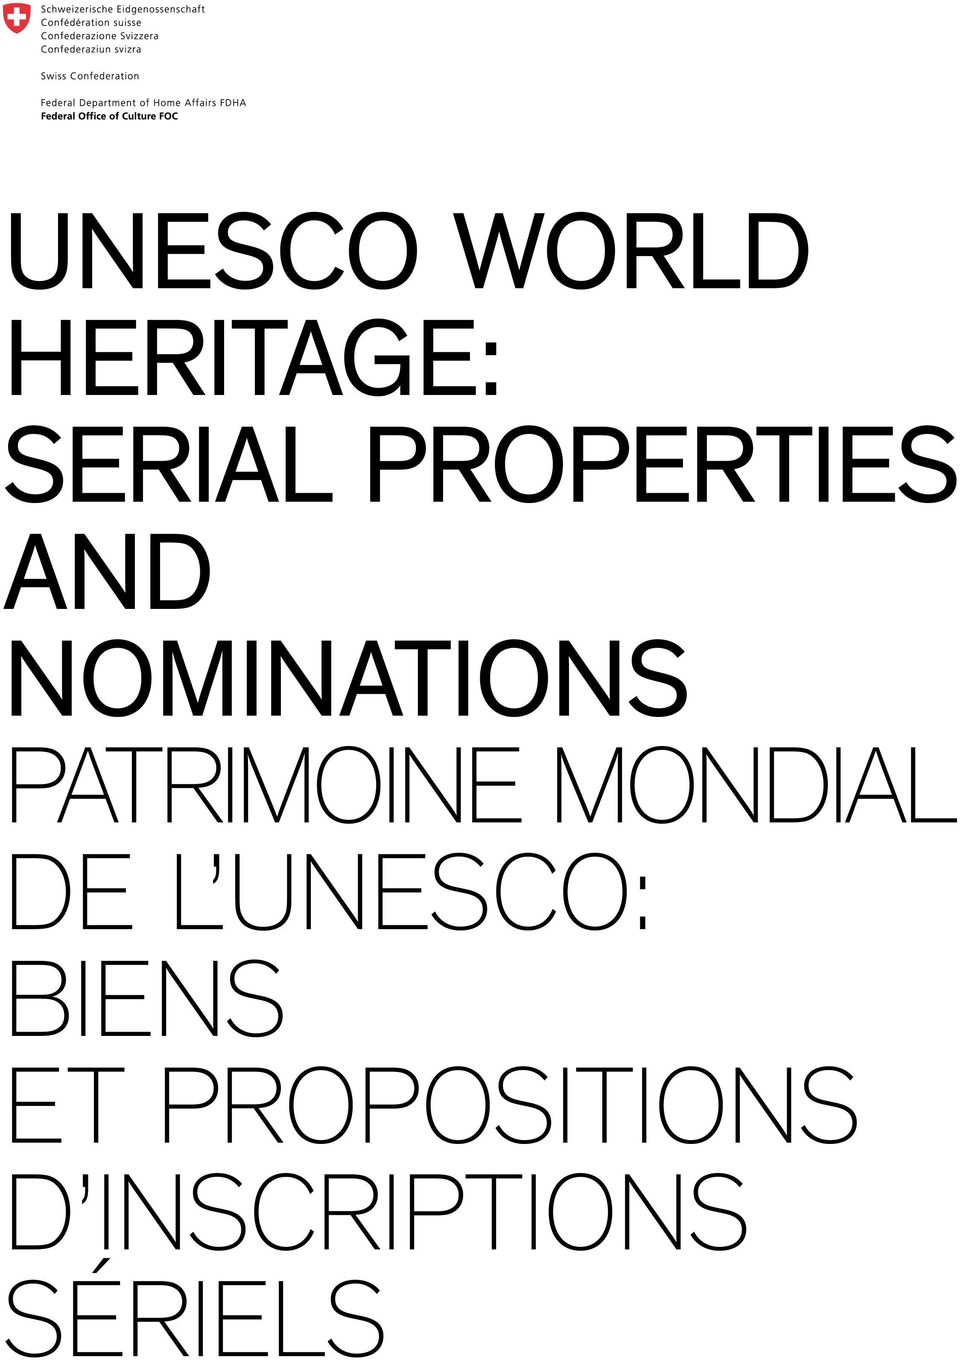 Patrimoine mondial de l UNESCO: